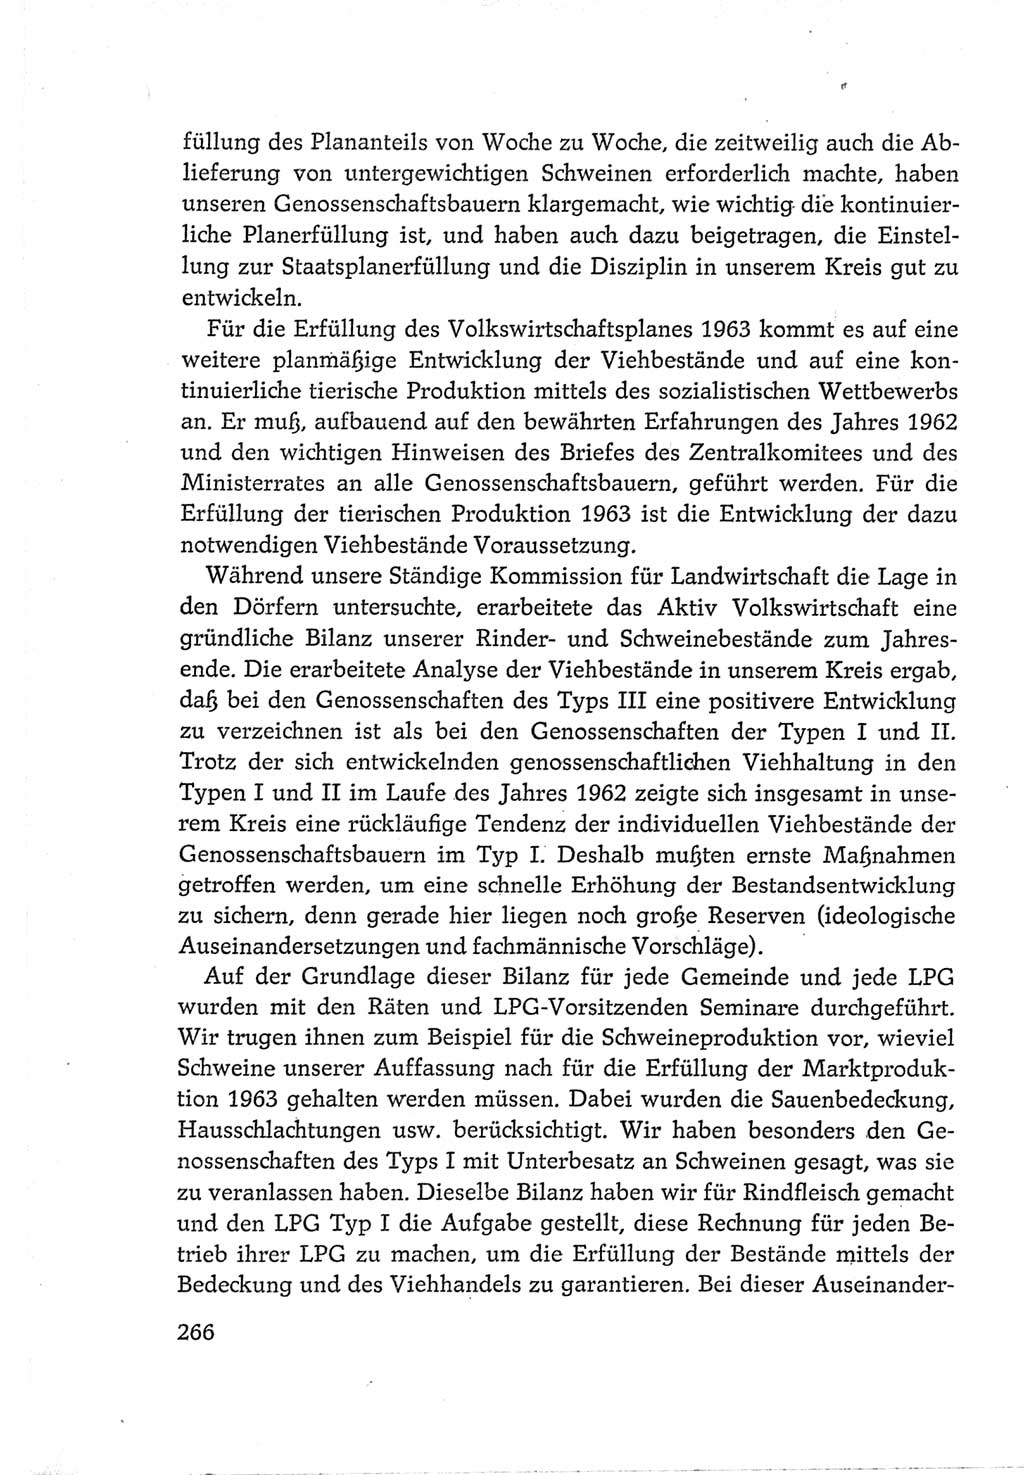 Protokoll der Verhandlungen des Ⅵ. Parteitages der Sozialistischen Einheitspartei Deutschlands (SED) [Deutsche Demokratische Republik (DDR)] 1963, Band Ⅲ, Seite 266 (Prot. Verh. Ⅵ. PT SED DDR 1963, Bd. Ⅲ, S. 266)